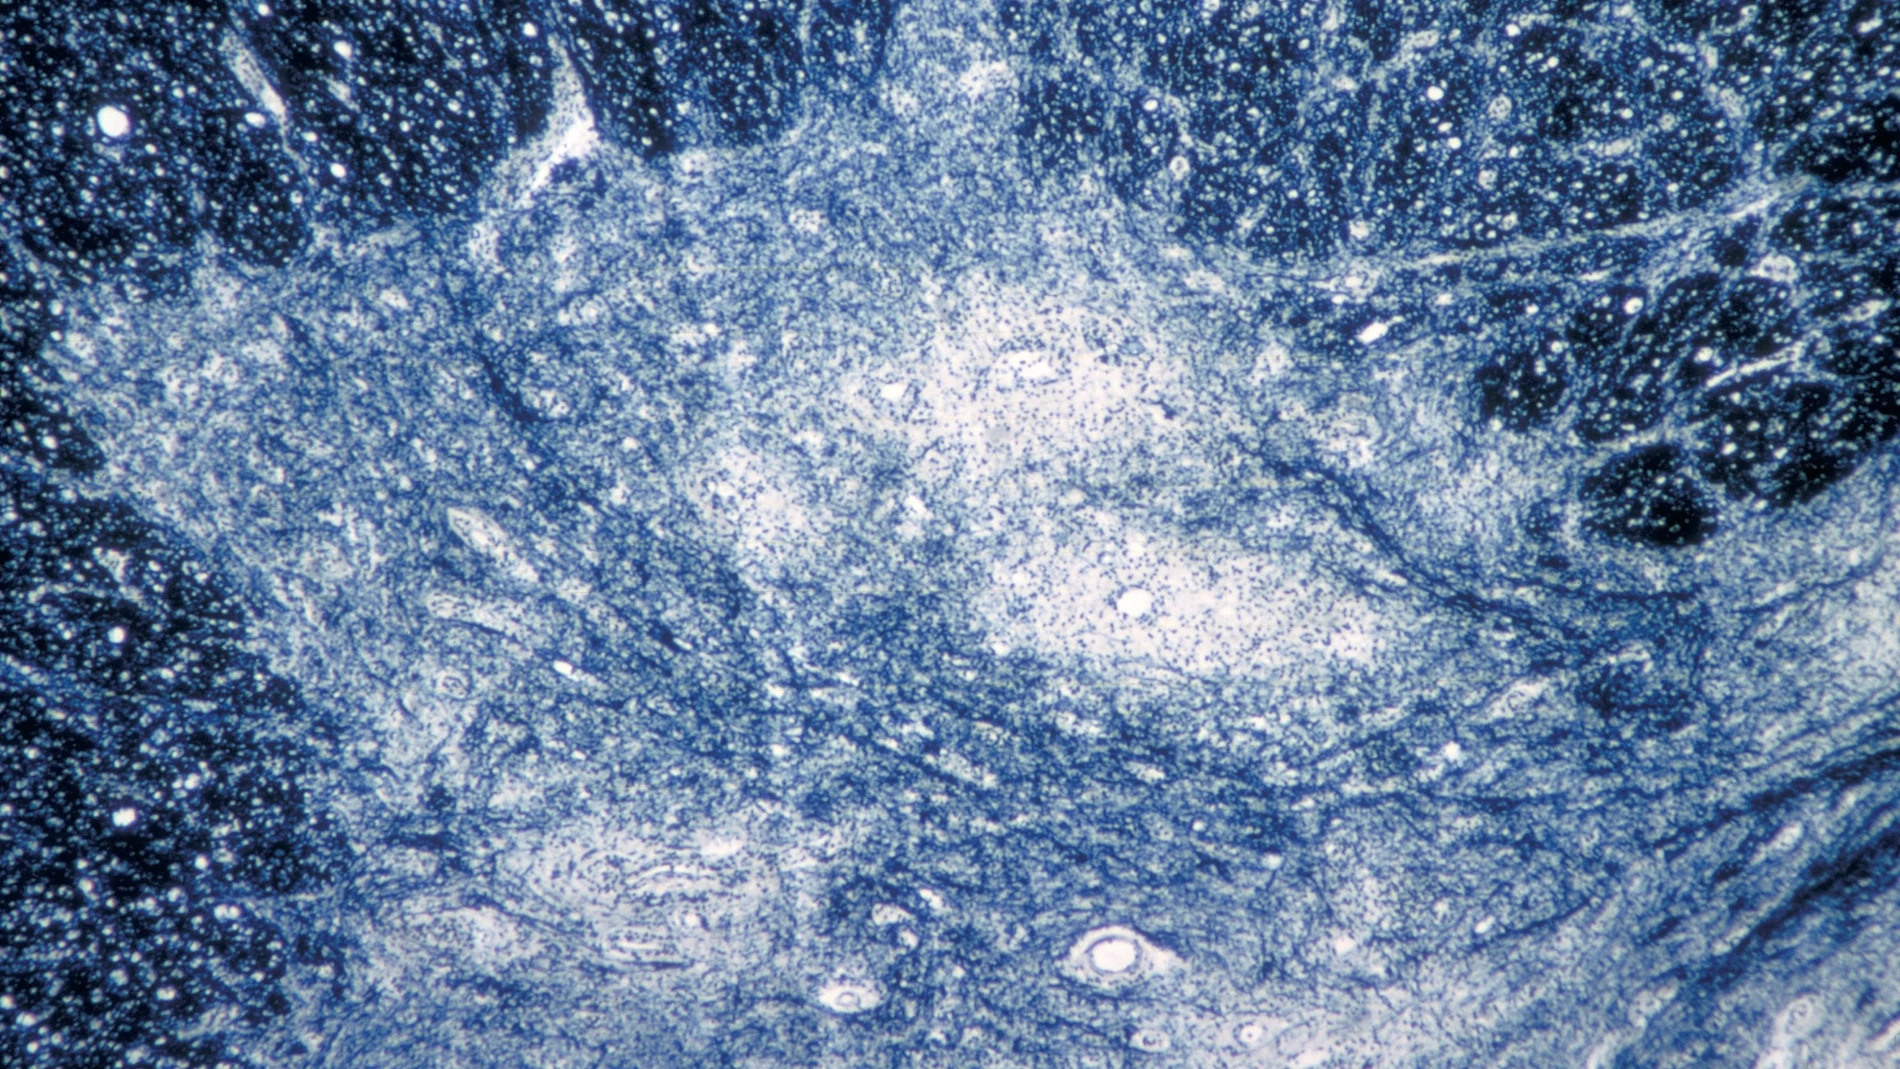 Imagen de microscopio de 1964 en la que se muestra el daño del virus de la polio en el tejido de la médula espinal